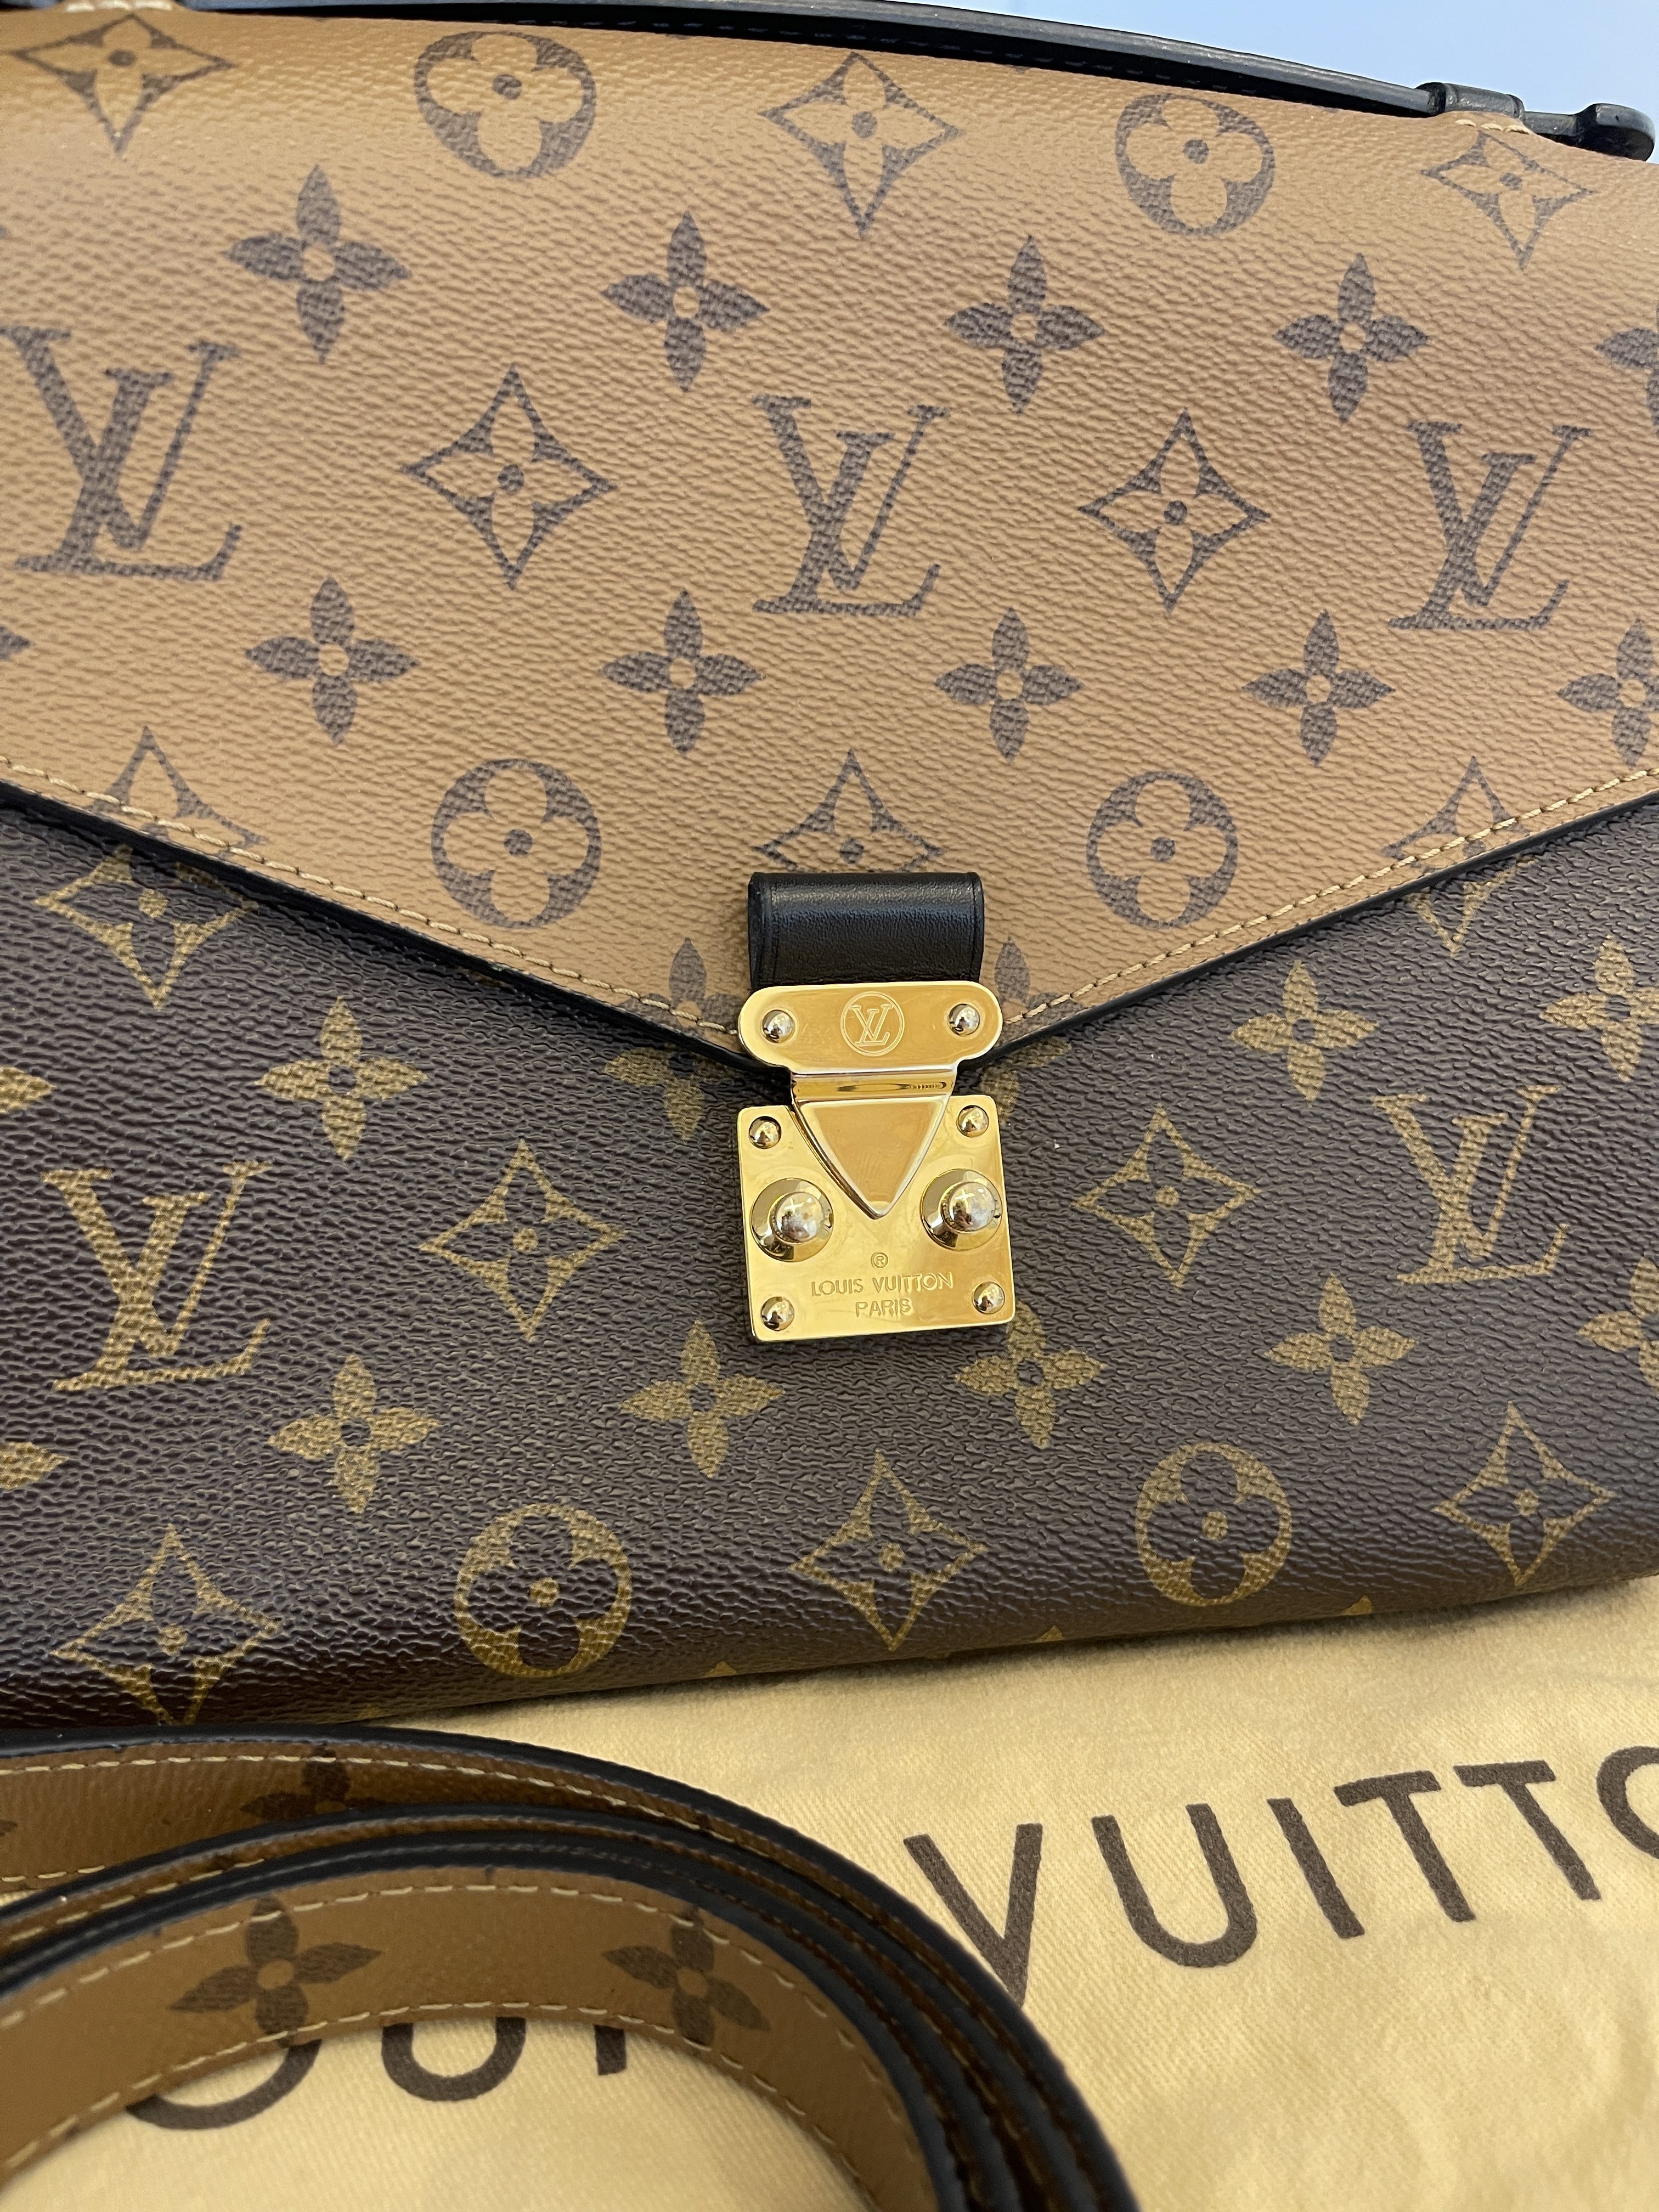 Louis Vuitton Pochette Metis Reverse - Klueles shop online